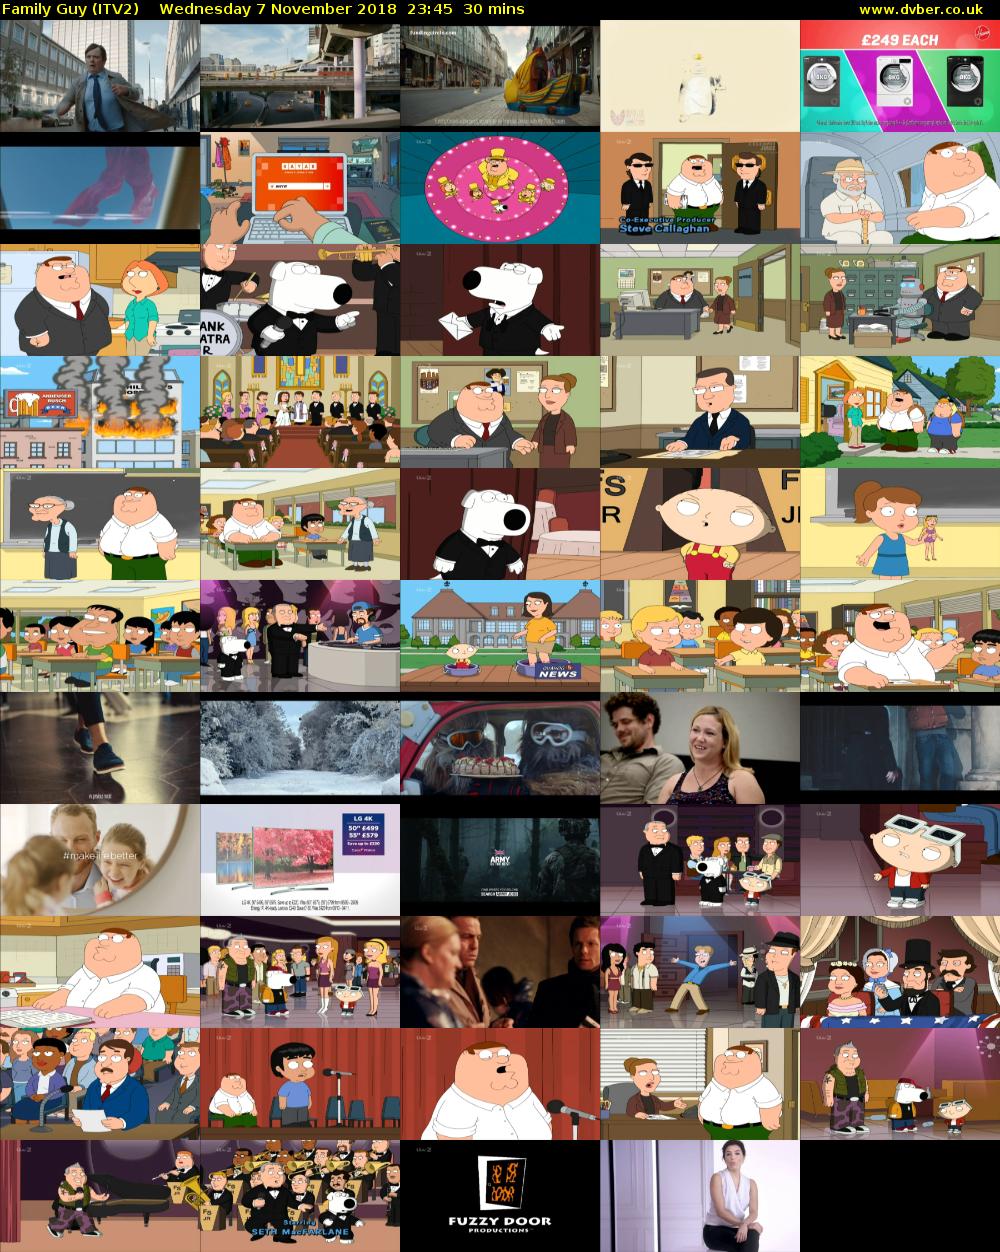 Family Guy (ITV2) Wednesday 7 November 2018 23:45 - 00:15